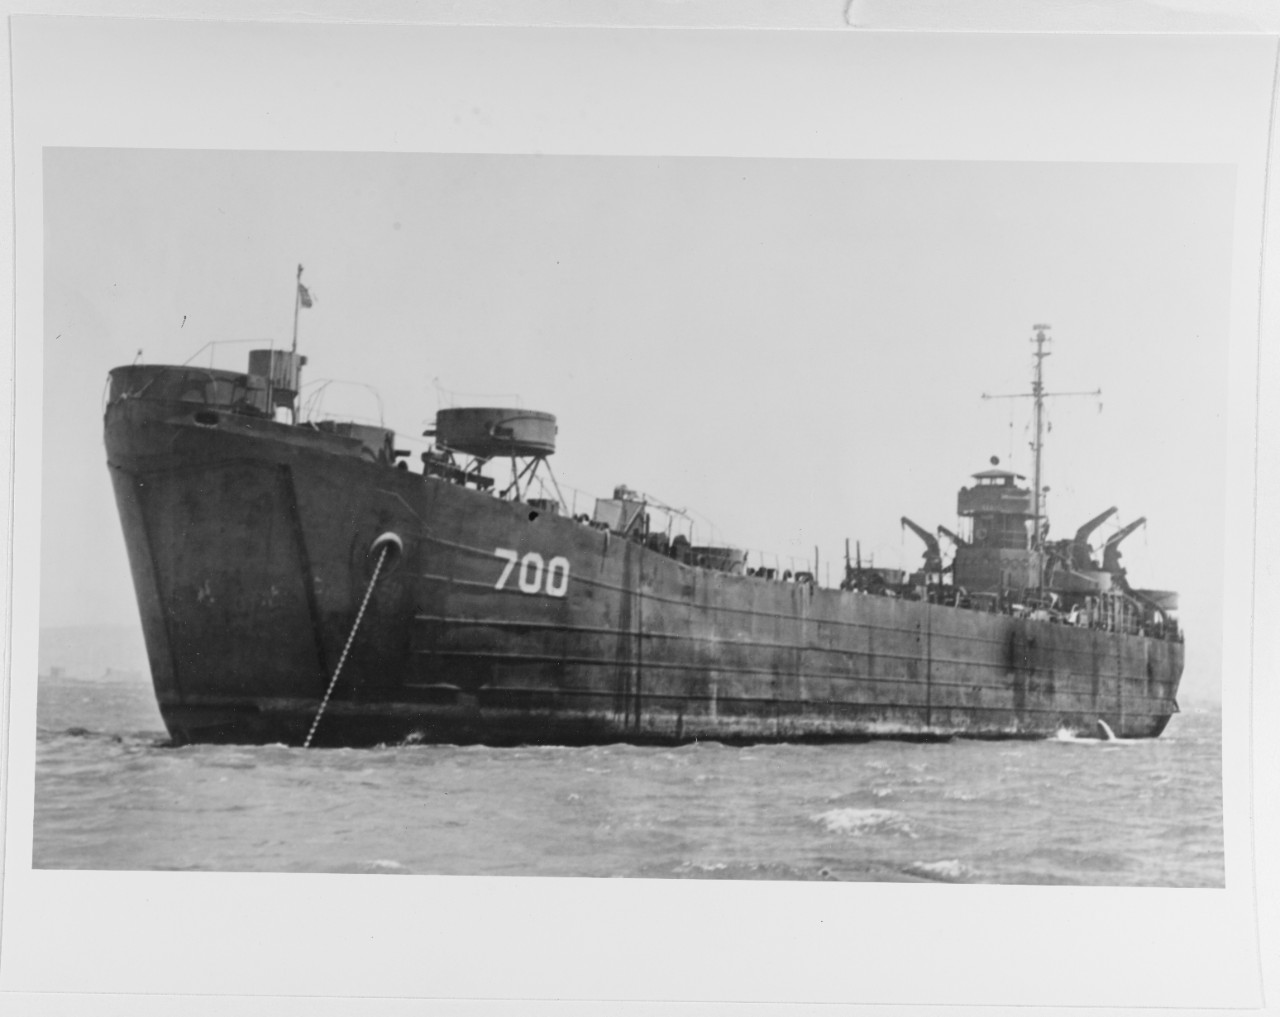 USS LST - 700